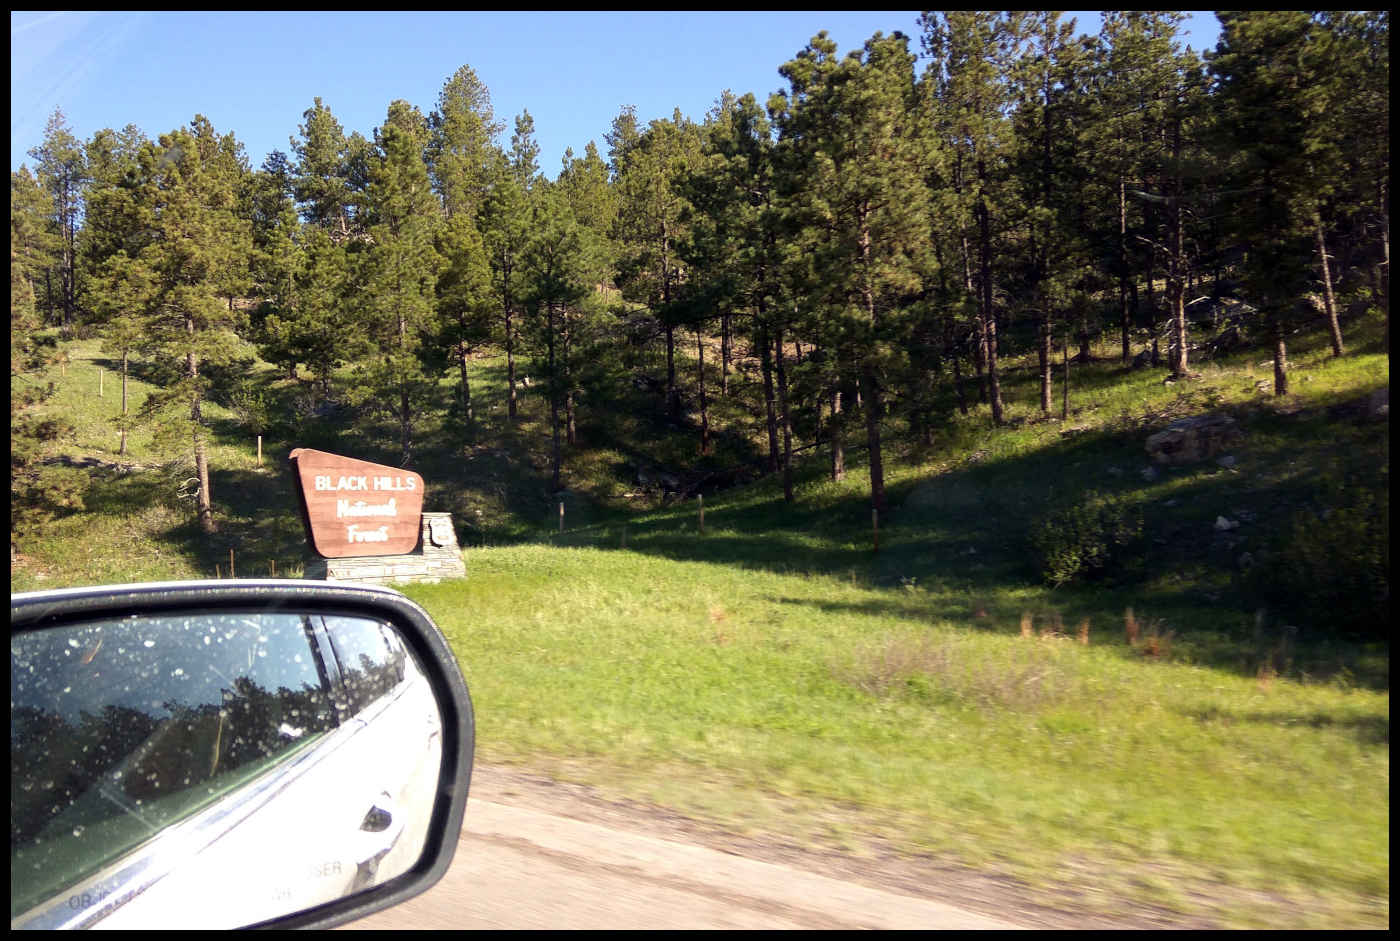 Señal de Black Hills National Forest